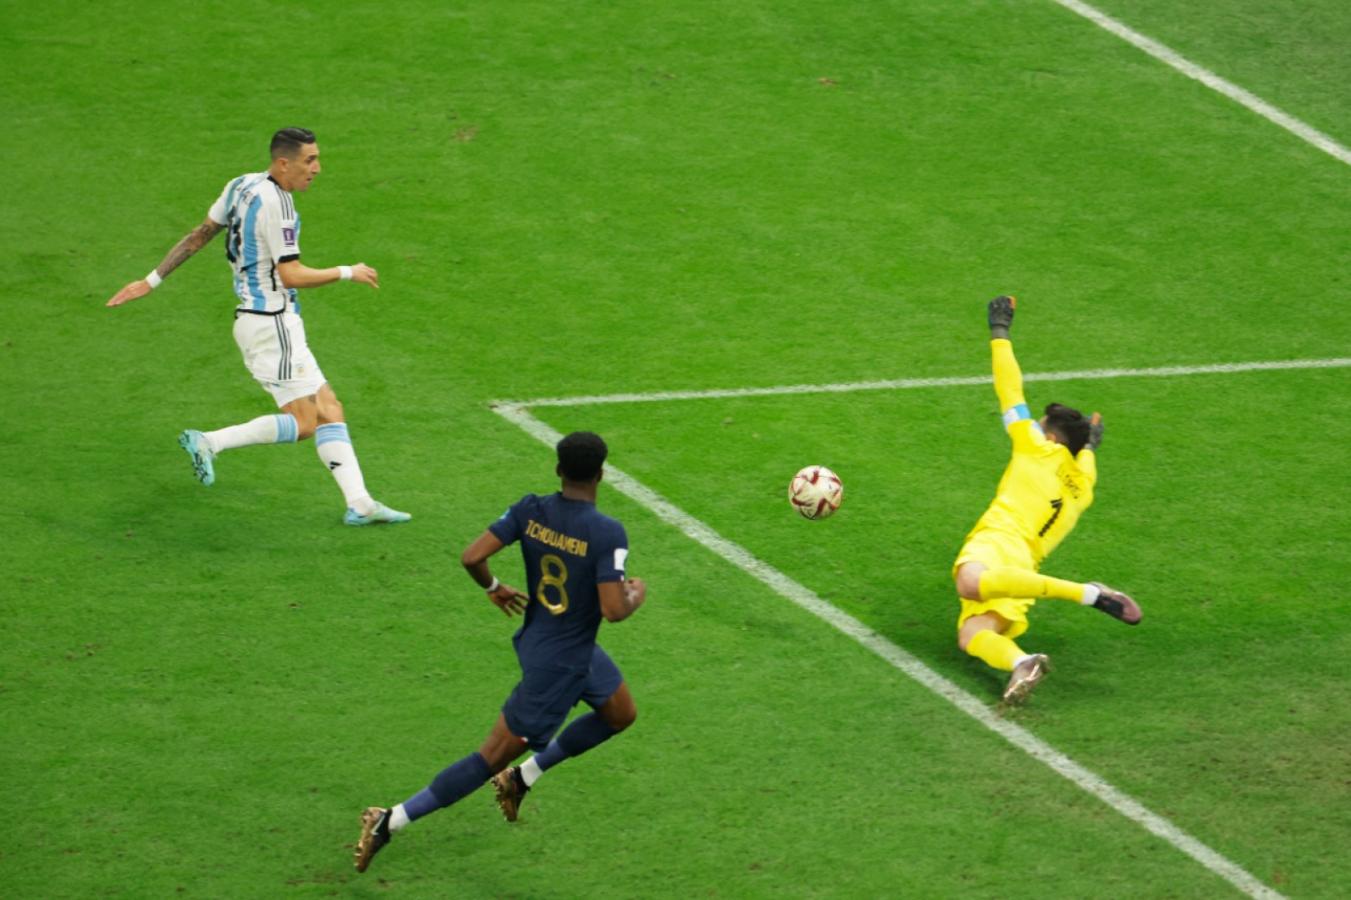 Imagen Di María coronó una jugada espectacular y definió para marcar el 2-0 (AFP)